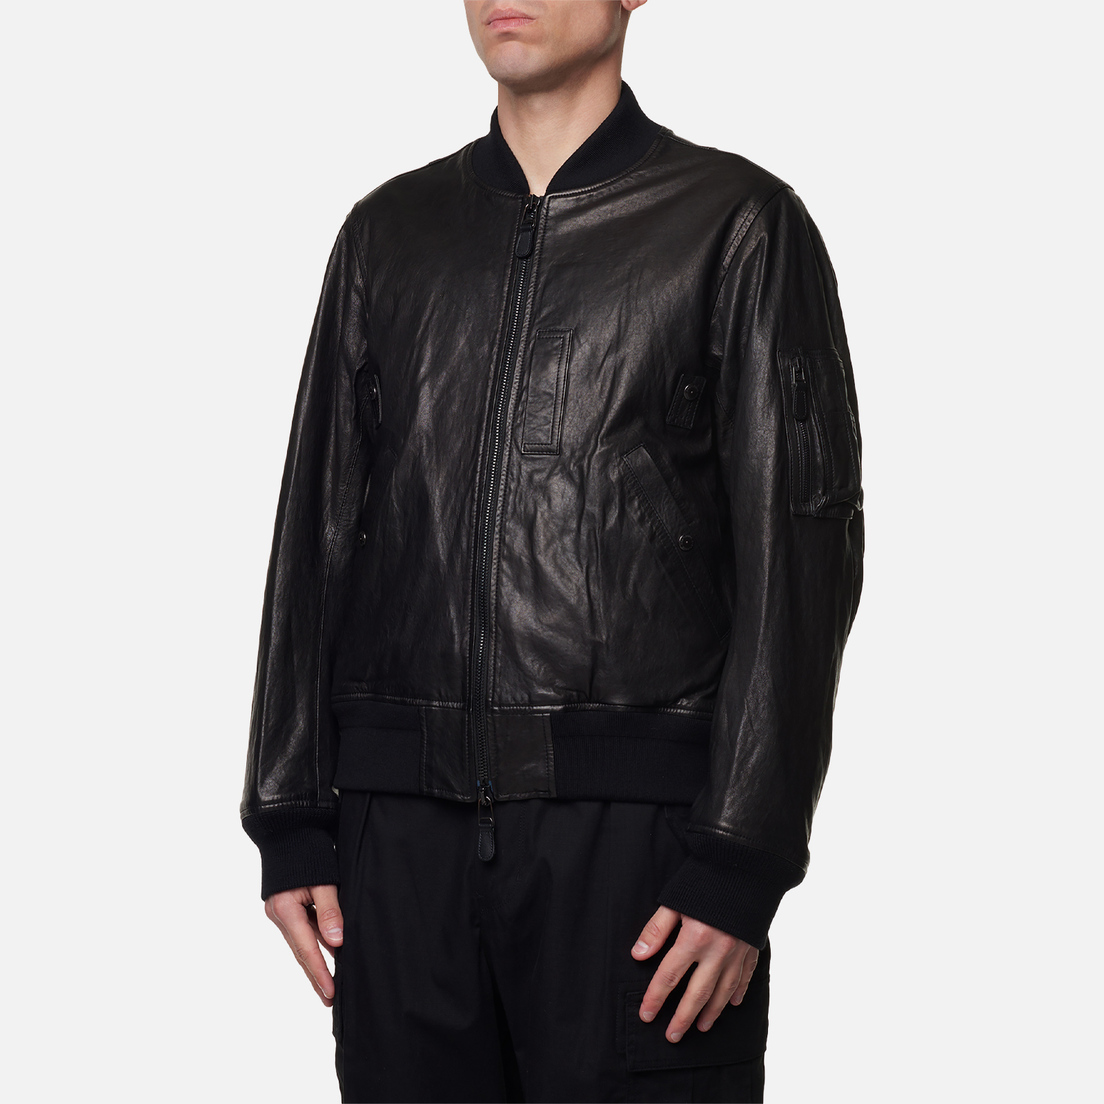 EASTLOGUE Мужская куртка бомбер MA-1 Leather